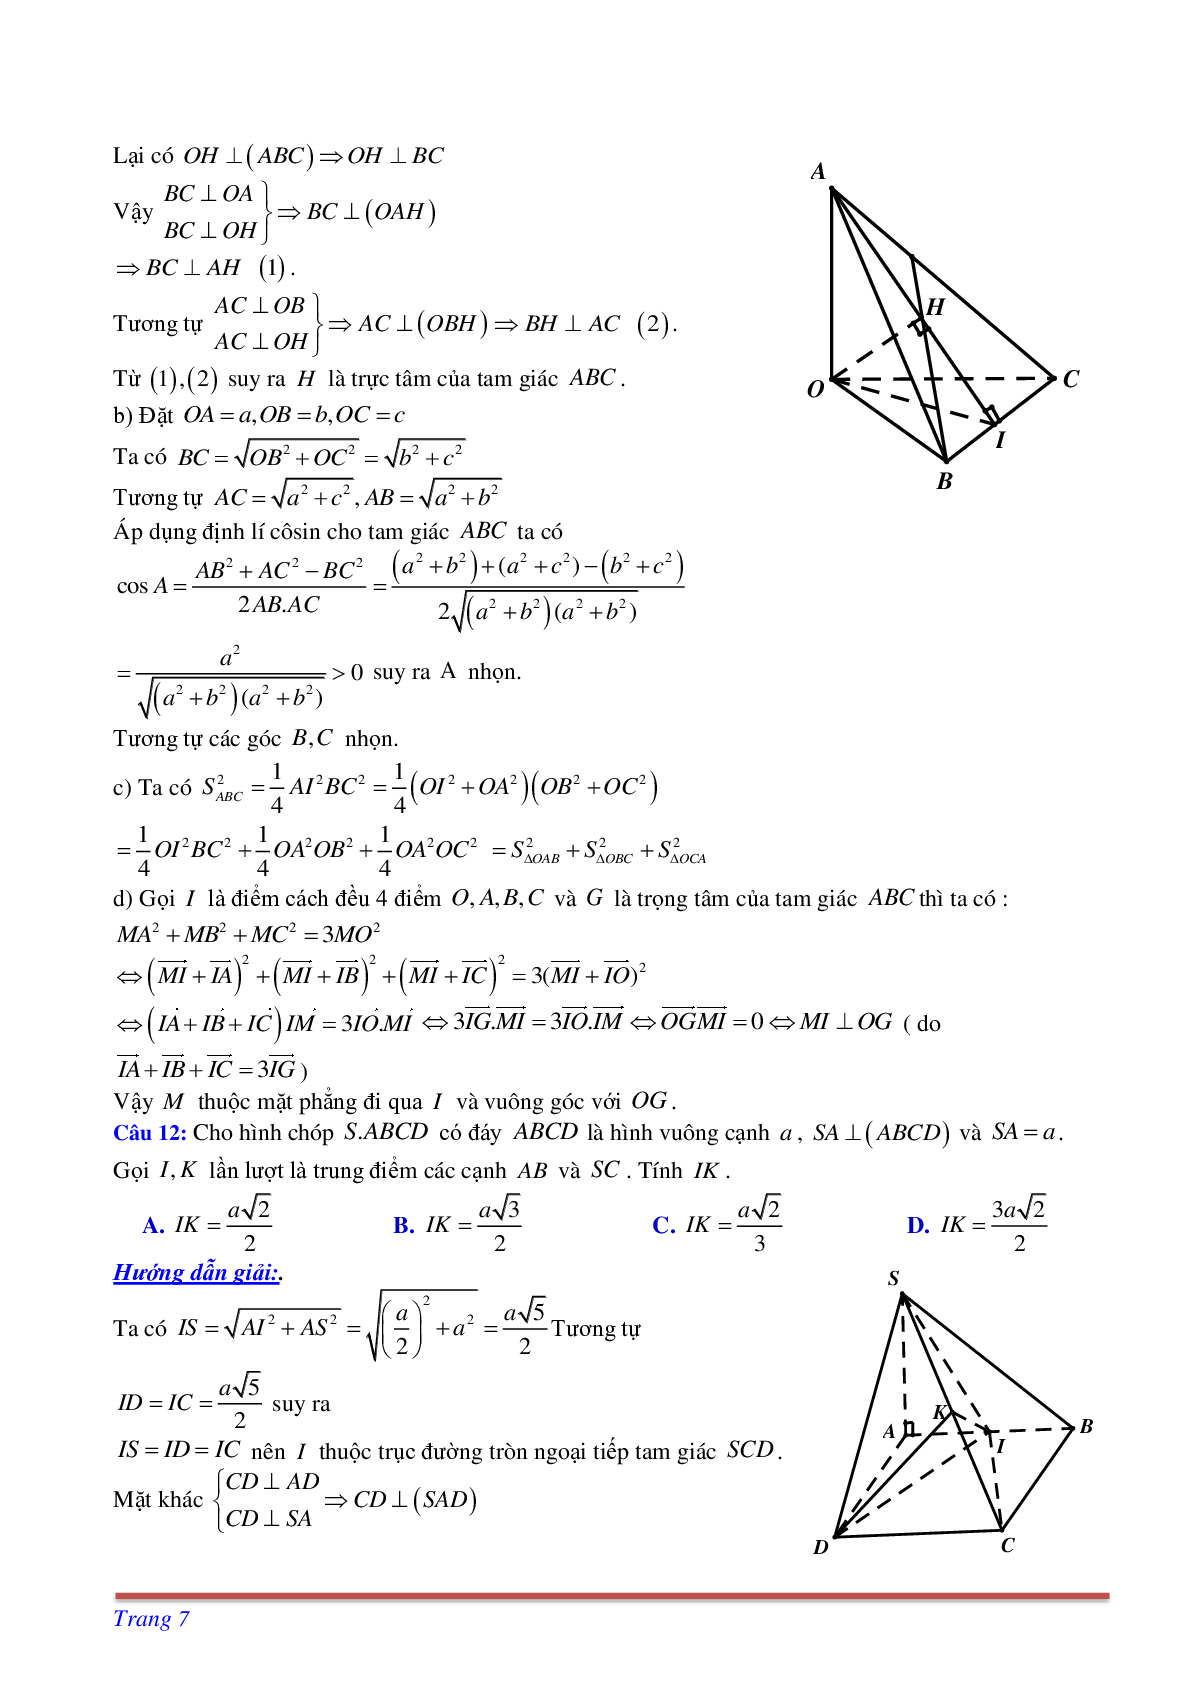 Phương pháp giải và bài tập về Cách tìm thiết diện liên quan đến vuông góc có đáp án (trang 7)